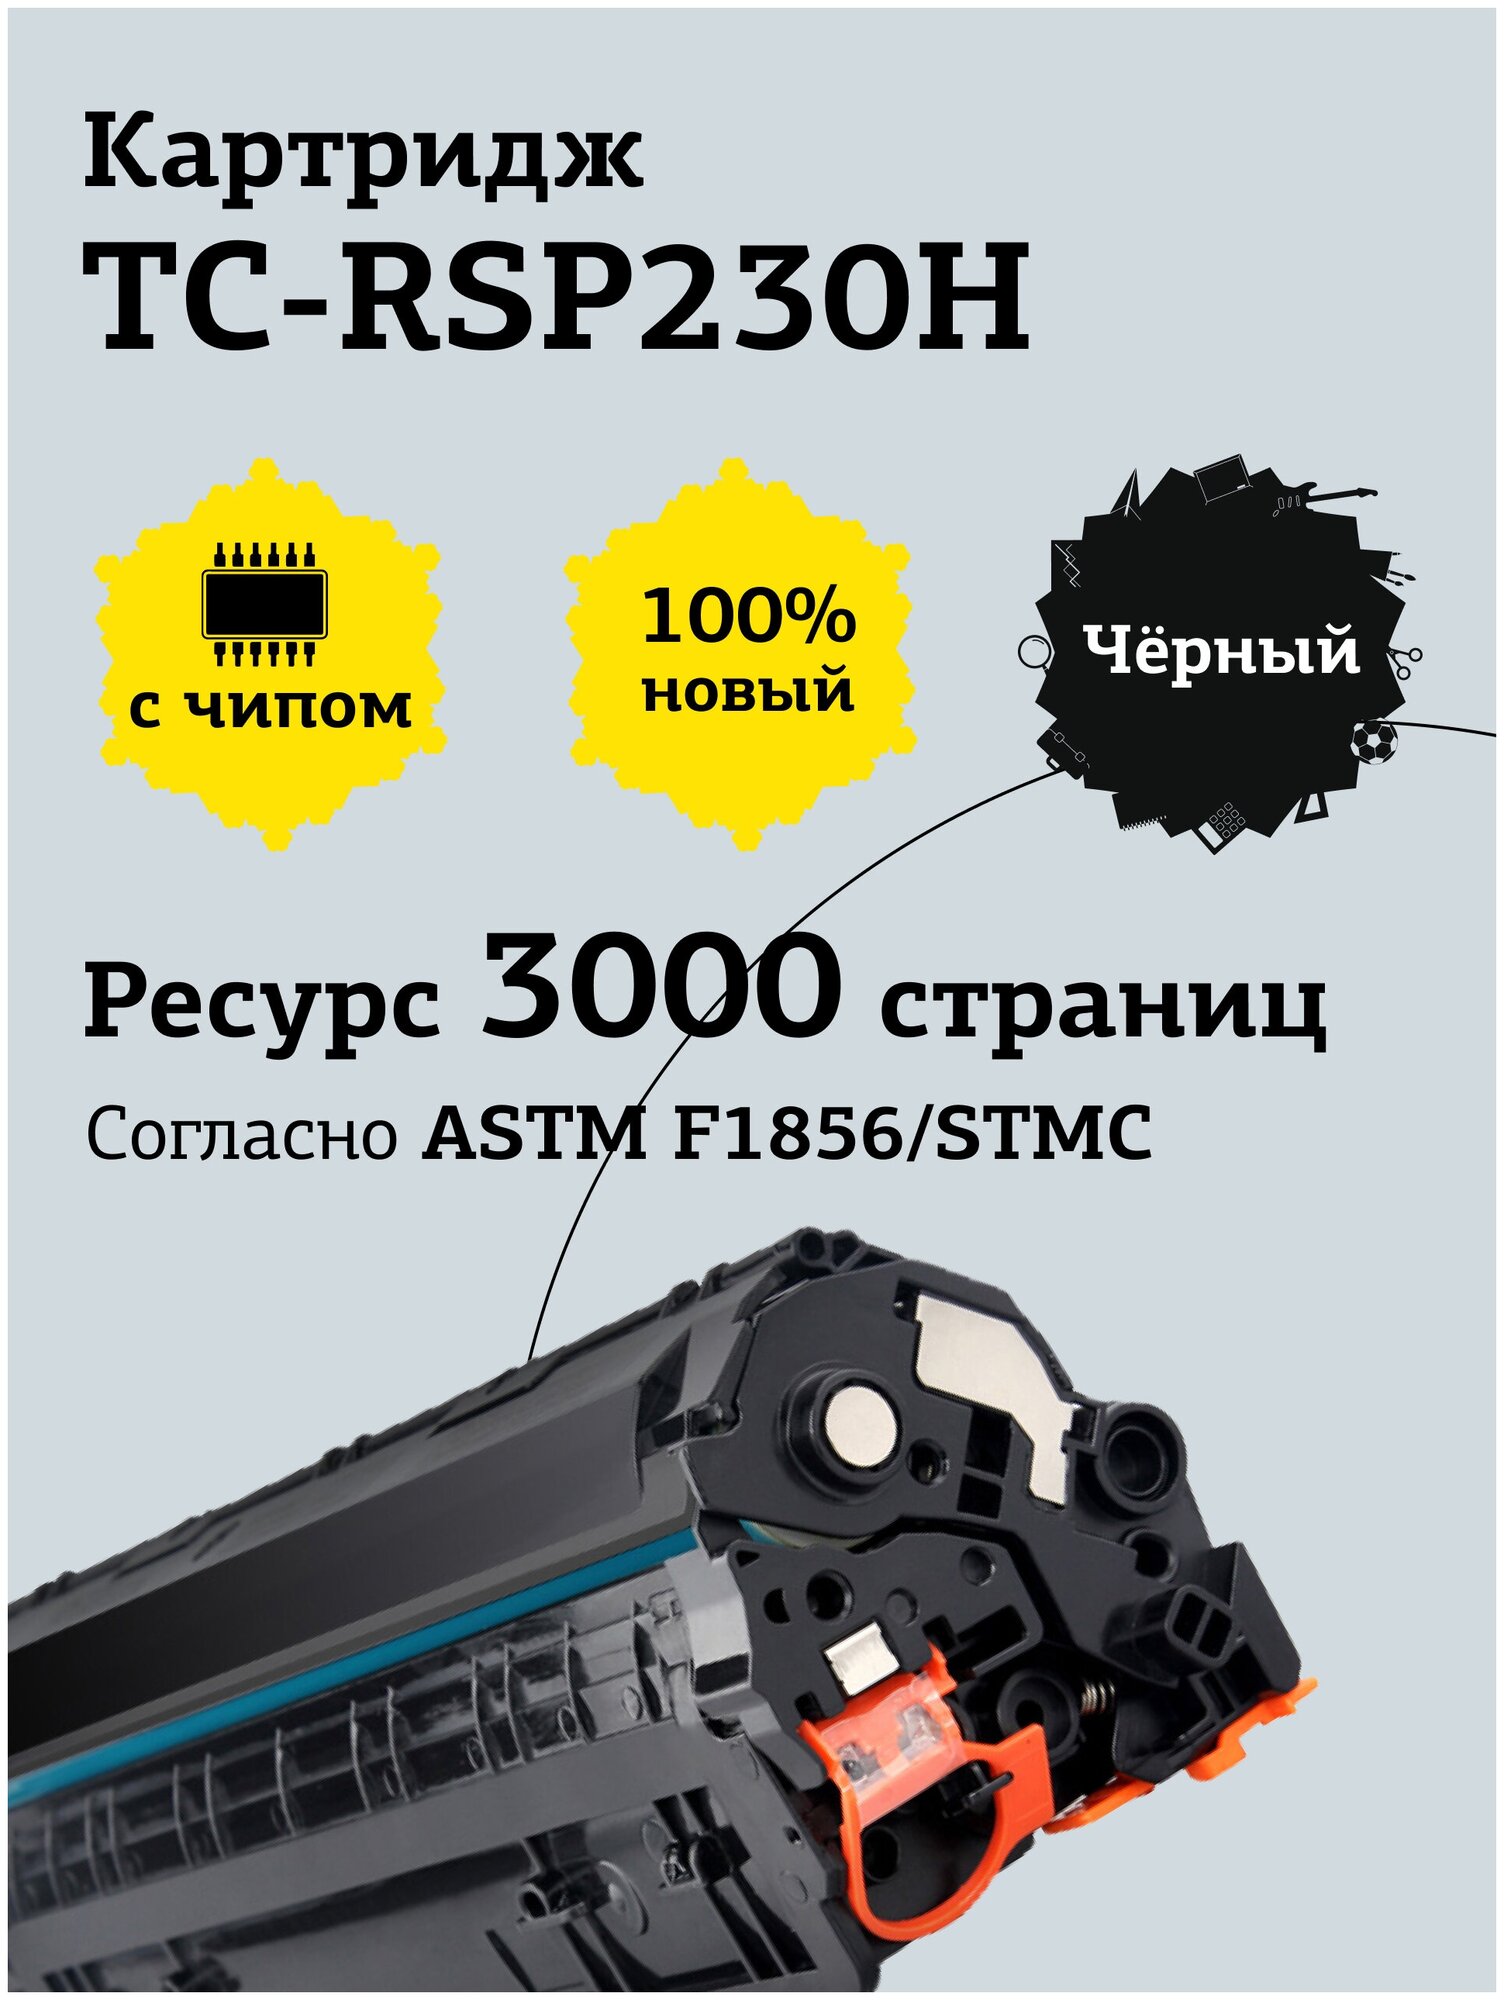 Картридж лазерный T2 TC-RSP230H (SP230DNw/230SFNw) для Ricoh, черный